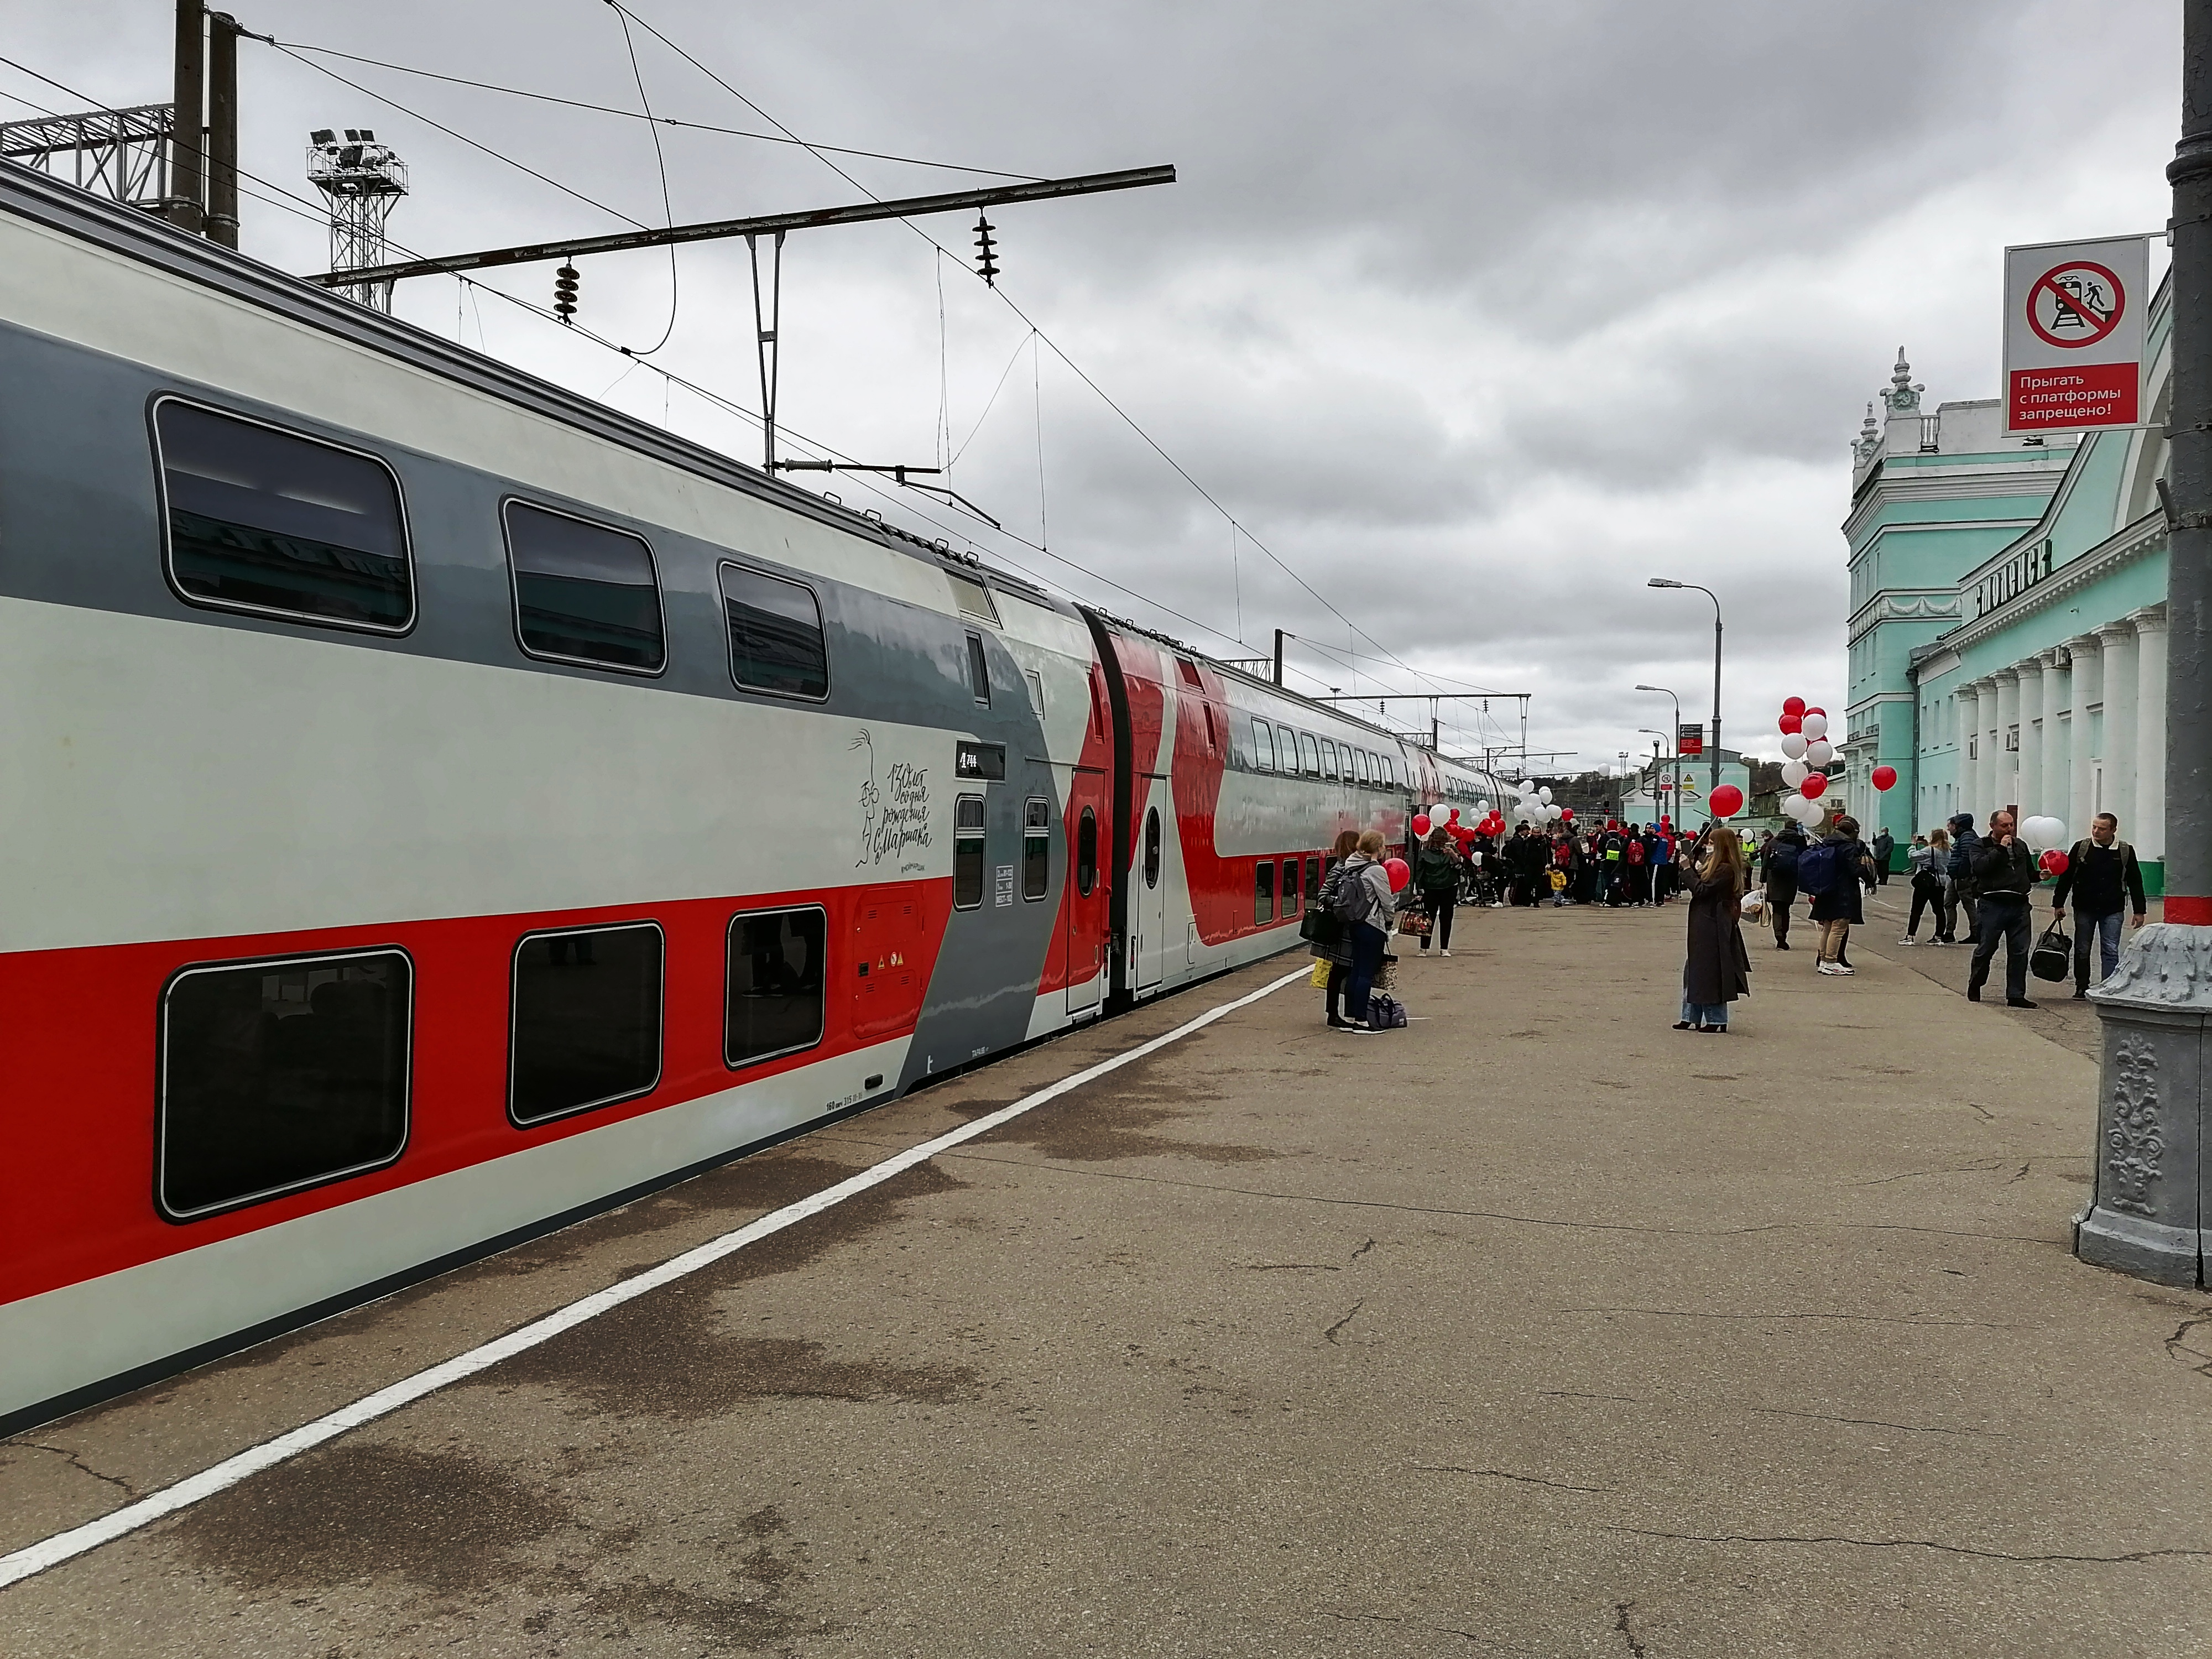 Новый двухэтажный поезд. Поезд 743 Москва Смоленск. Поезд Смоленск Москва 743/744. Москва — Смоленск, 743ч «Ласточка». Поезд 743 Москва Смоленск двухэтажный.